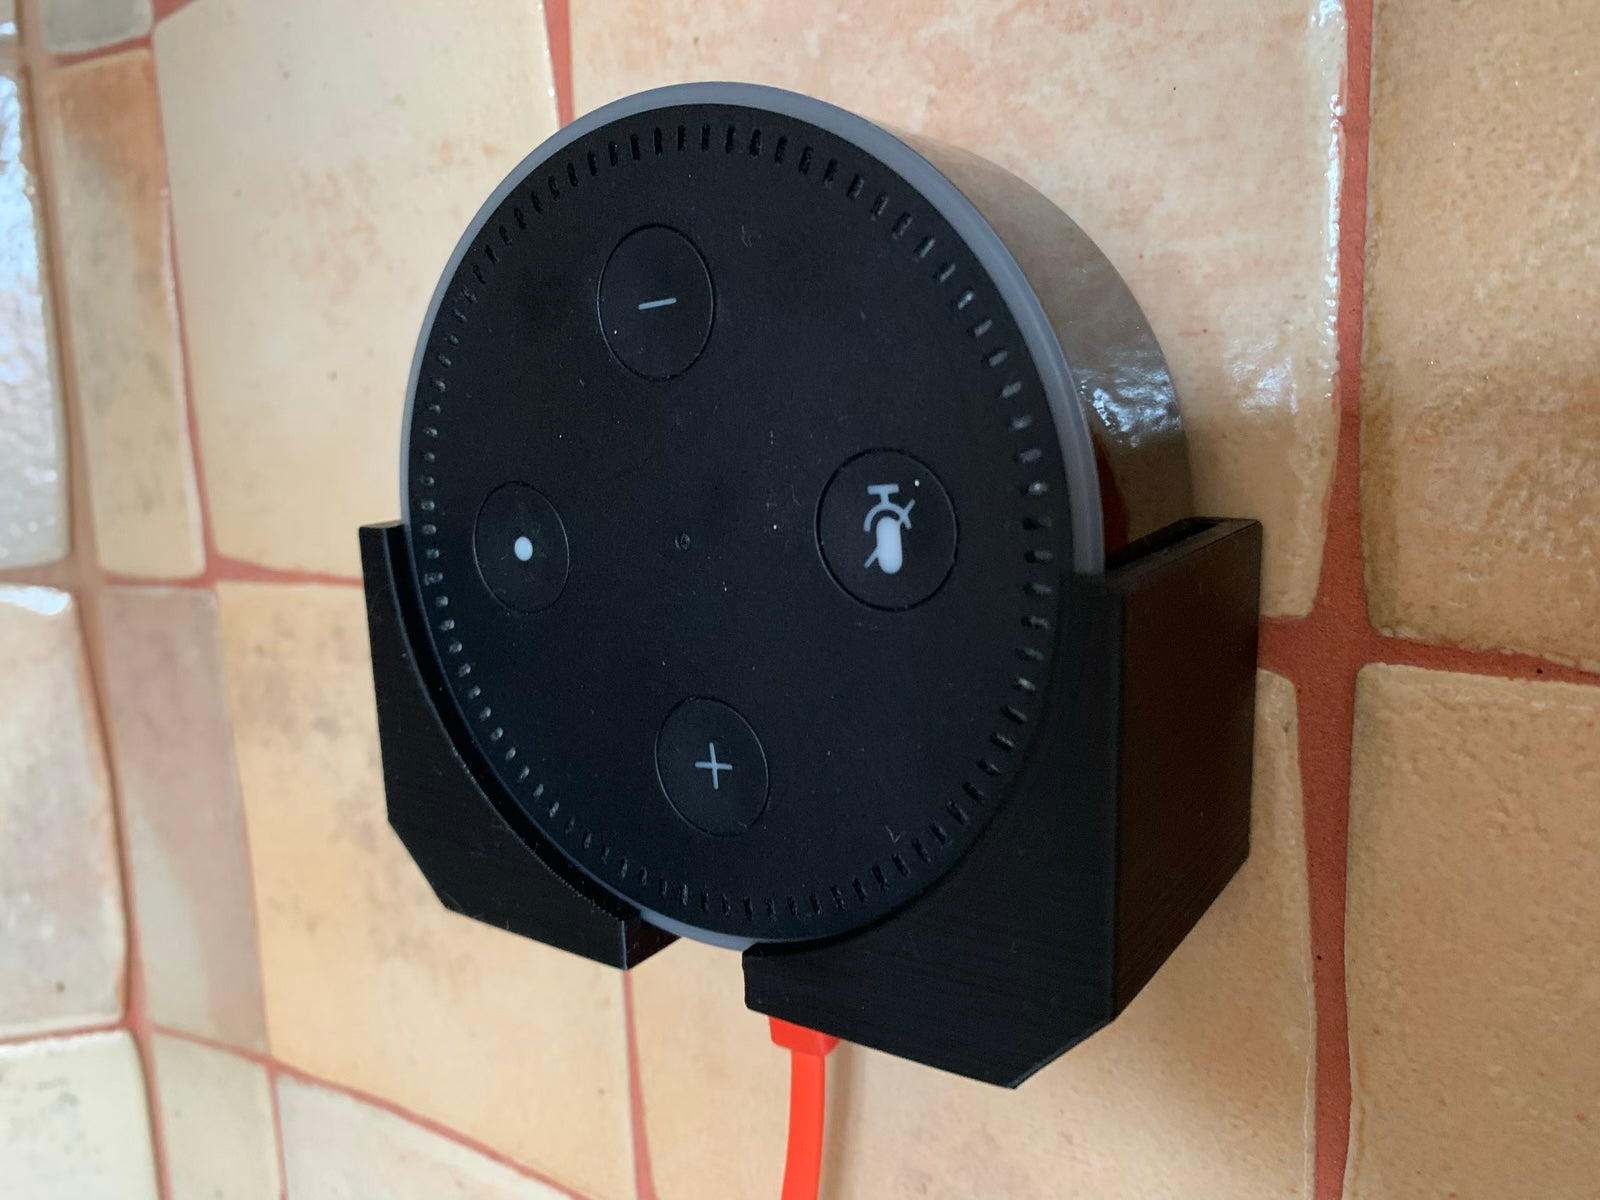 Wandhalterung für Amazon Echo Dot der 2. Generation